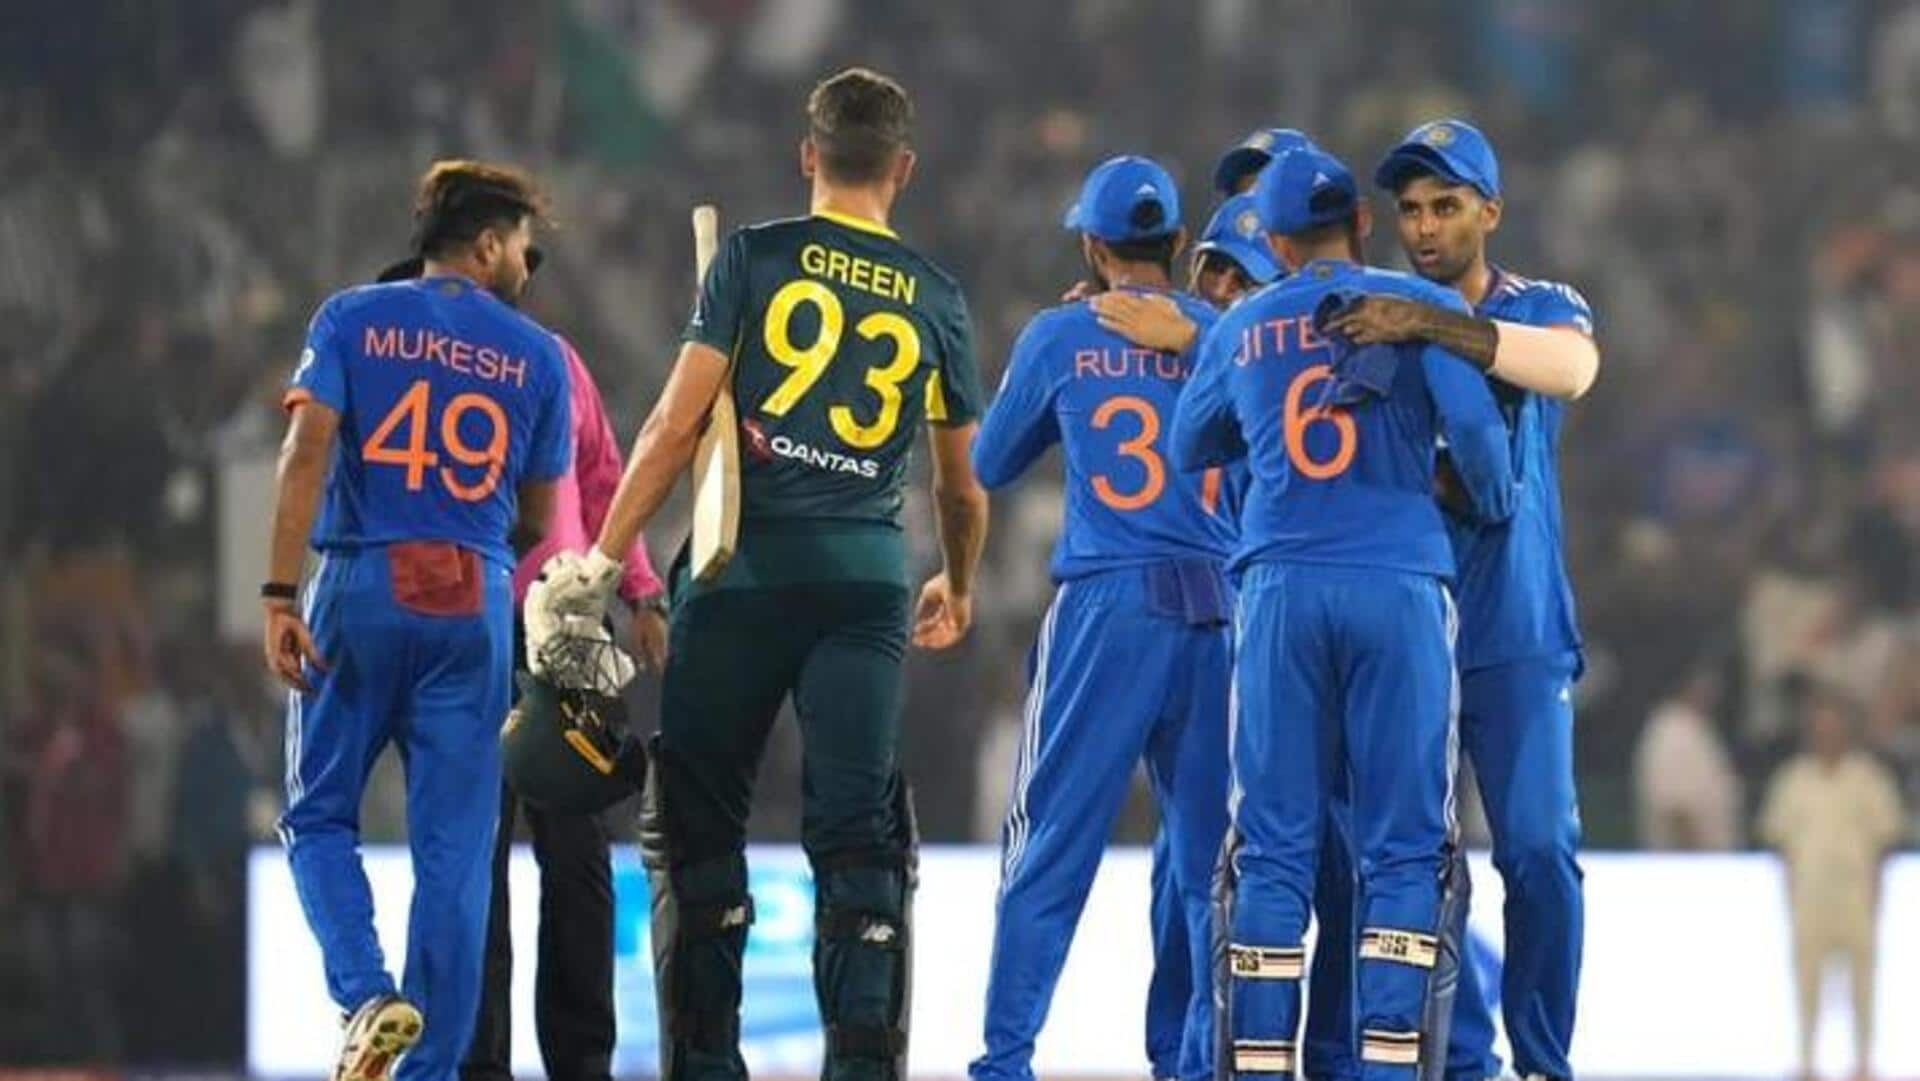 இந்தியா vs ஆஸ்திரேலியா ஐந்தாவது T20I : டாஸ் வென்ற ஆஸ்திரேலியா முதலில் பந்துவீச முடிவு